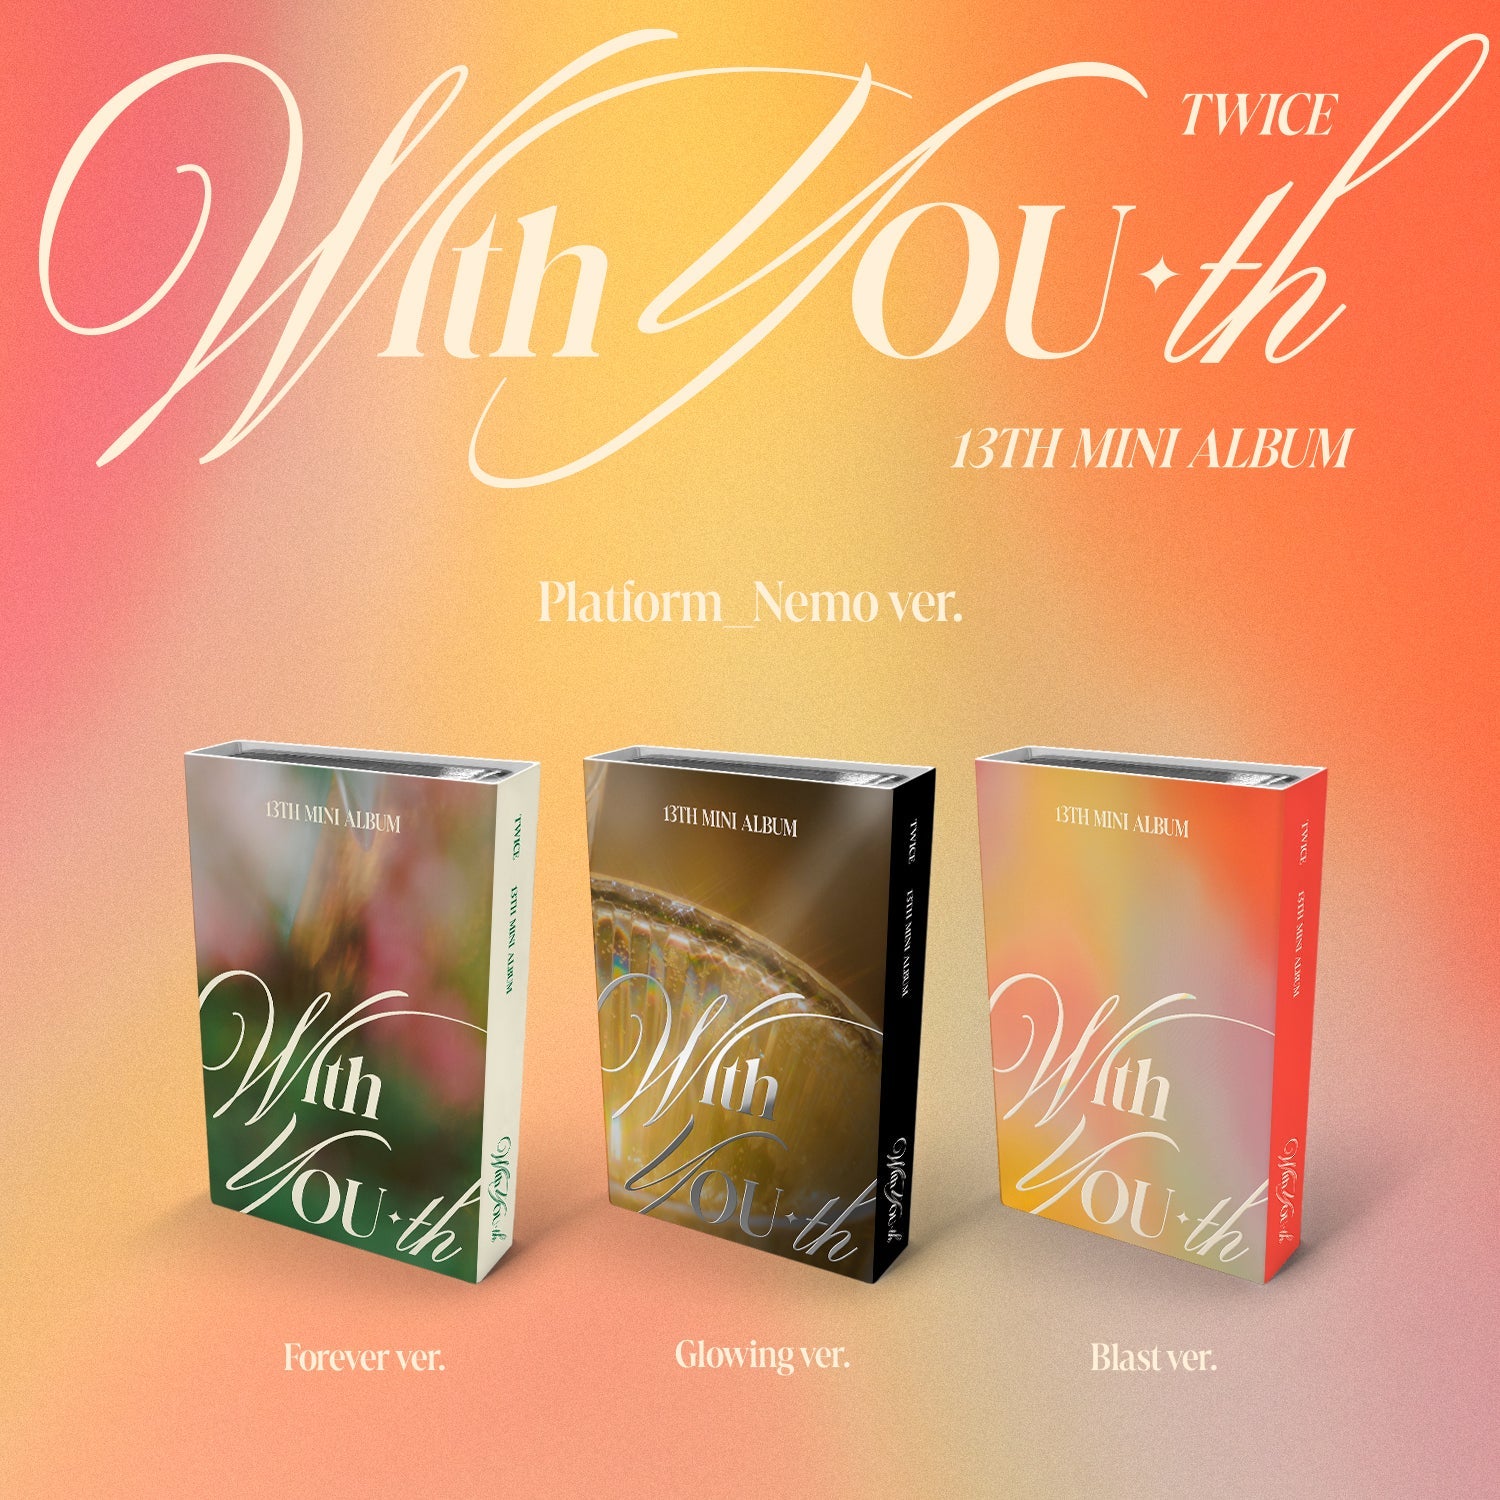 TWICE 13TH MINI ALBUM 'WITH YOU-TH' (NEMO) SET COVER